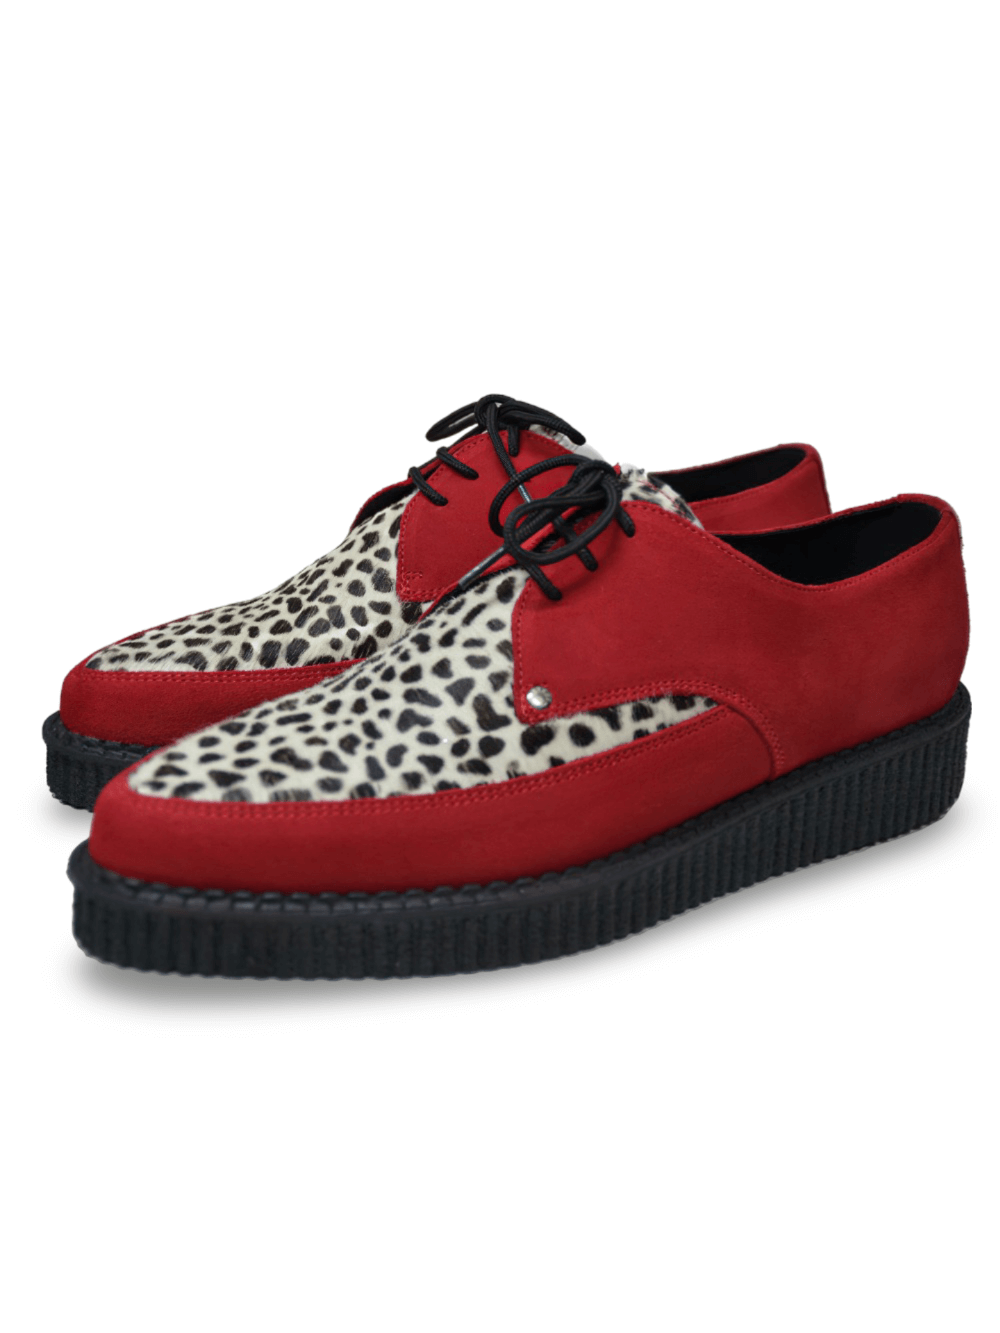 Chaussures à lacets Creeper pointues rouges et léopard